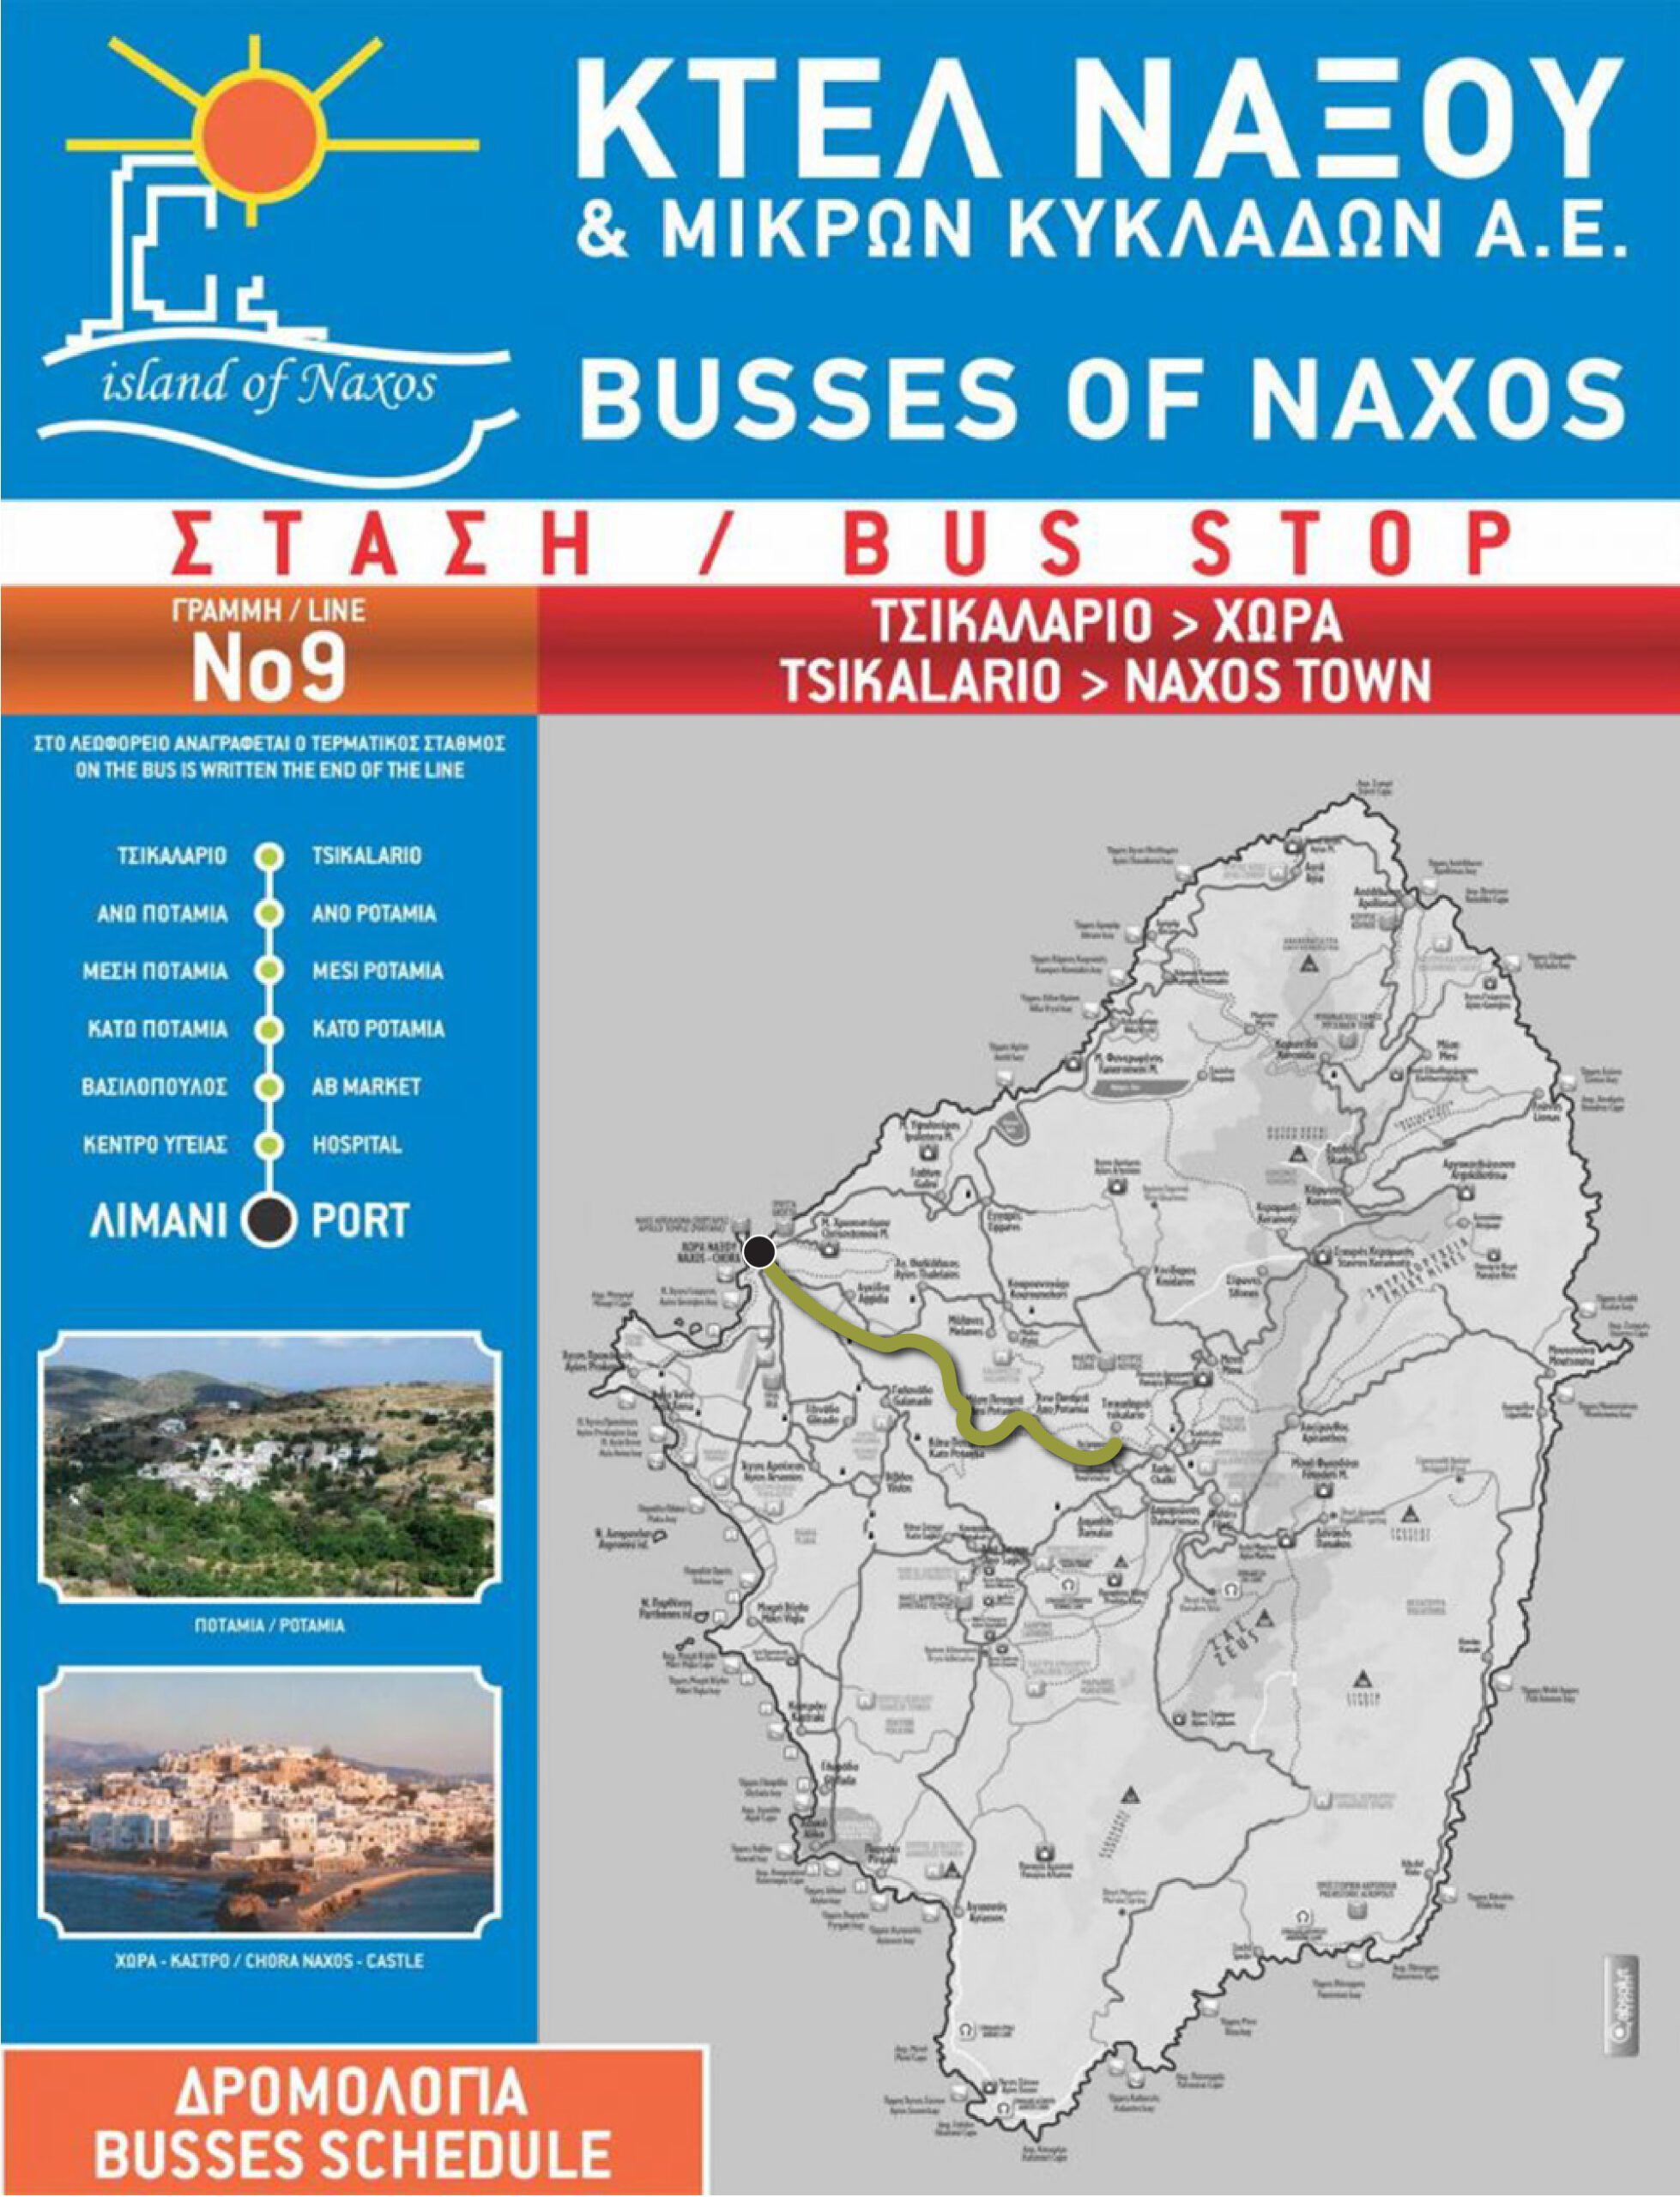 Naxos bus route #9.